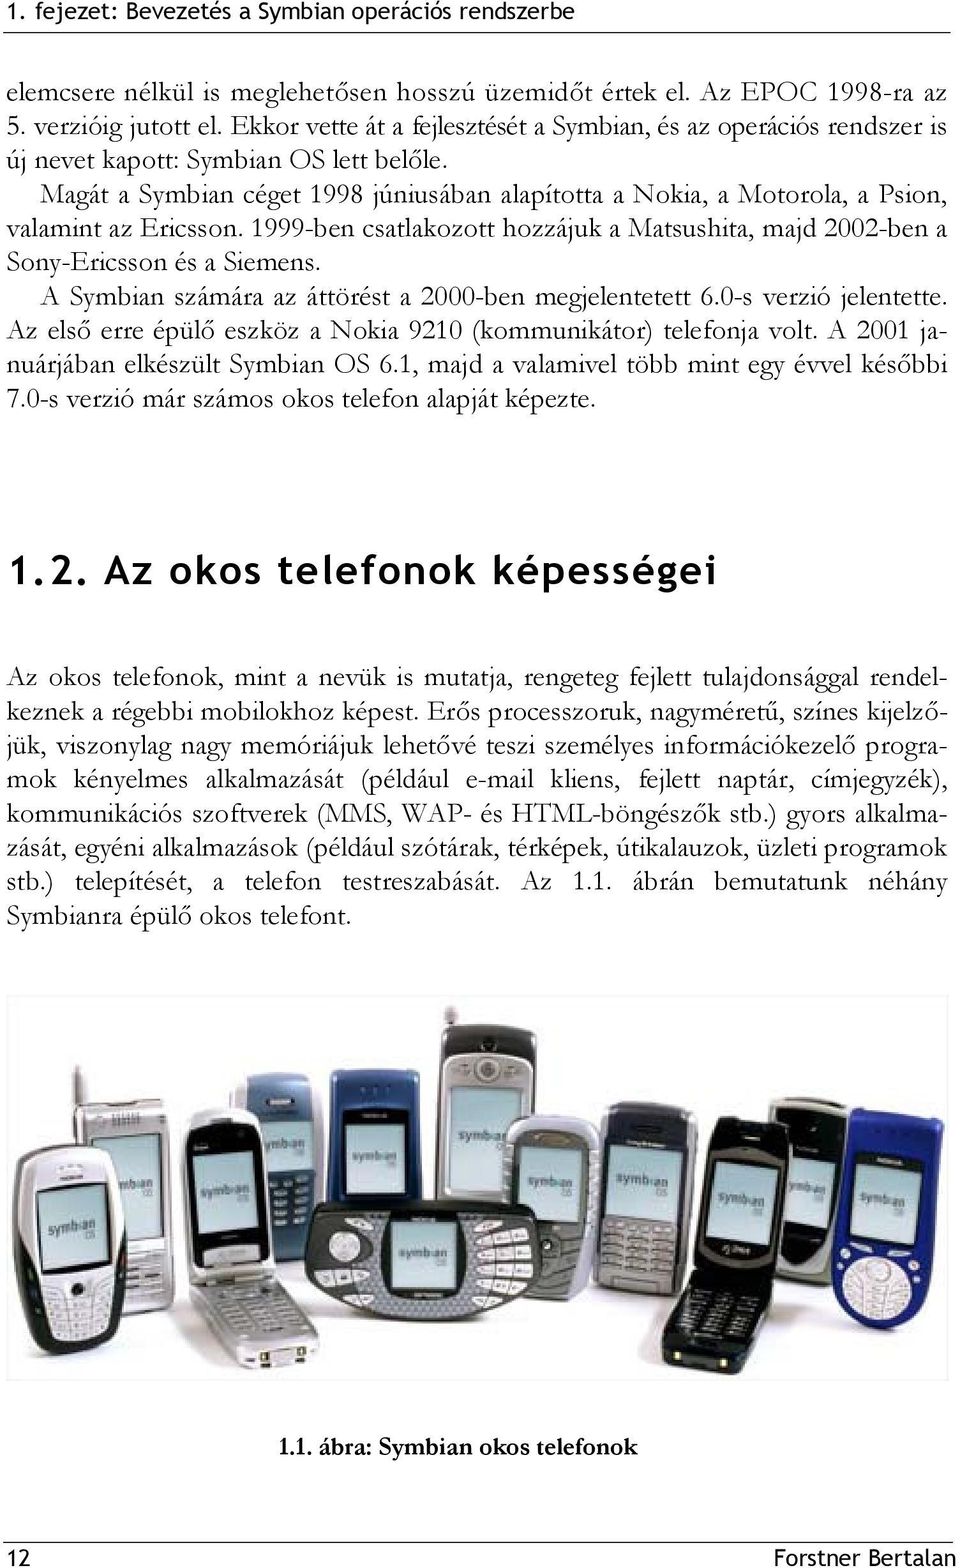 Magát a Symbian céget 1998 júniusában alapította a Nokia, a Motorola, a Psion, valamint az Ericsson. 1999-ben csatlakozott hozzájuk a Matsushita, majd 2002-ben a Sony-Ericsson és a Siemens.